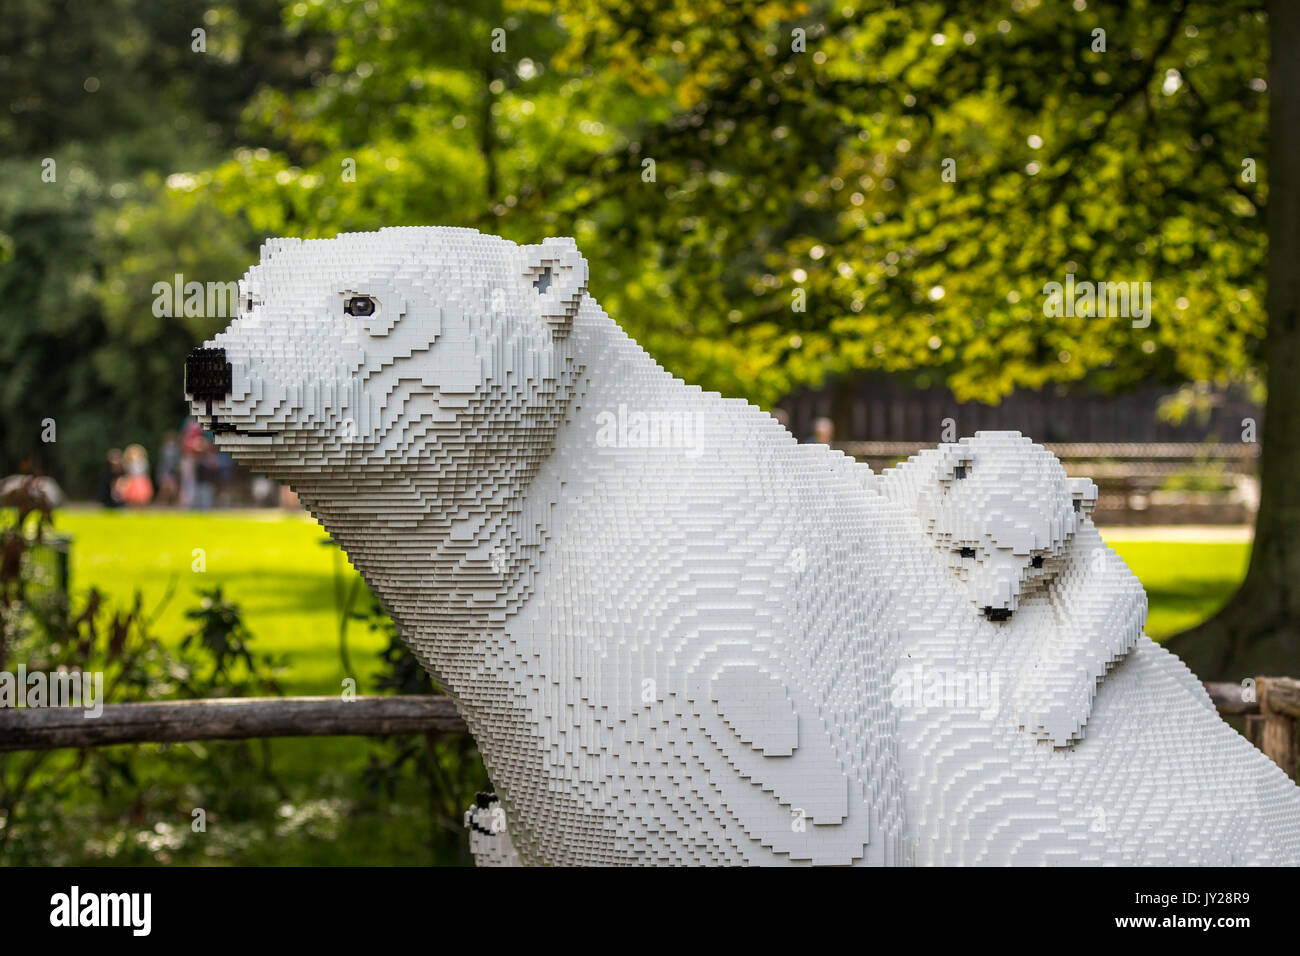 Le zoo de Planckendael, Mechelen, Belgique - 17 août 2017 : l'ours blanc et bébé ours à partir de briques lego à l'exposition 'nature' connecte par Sean Kenney Banque D'Images